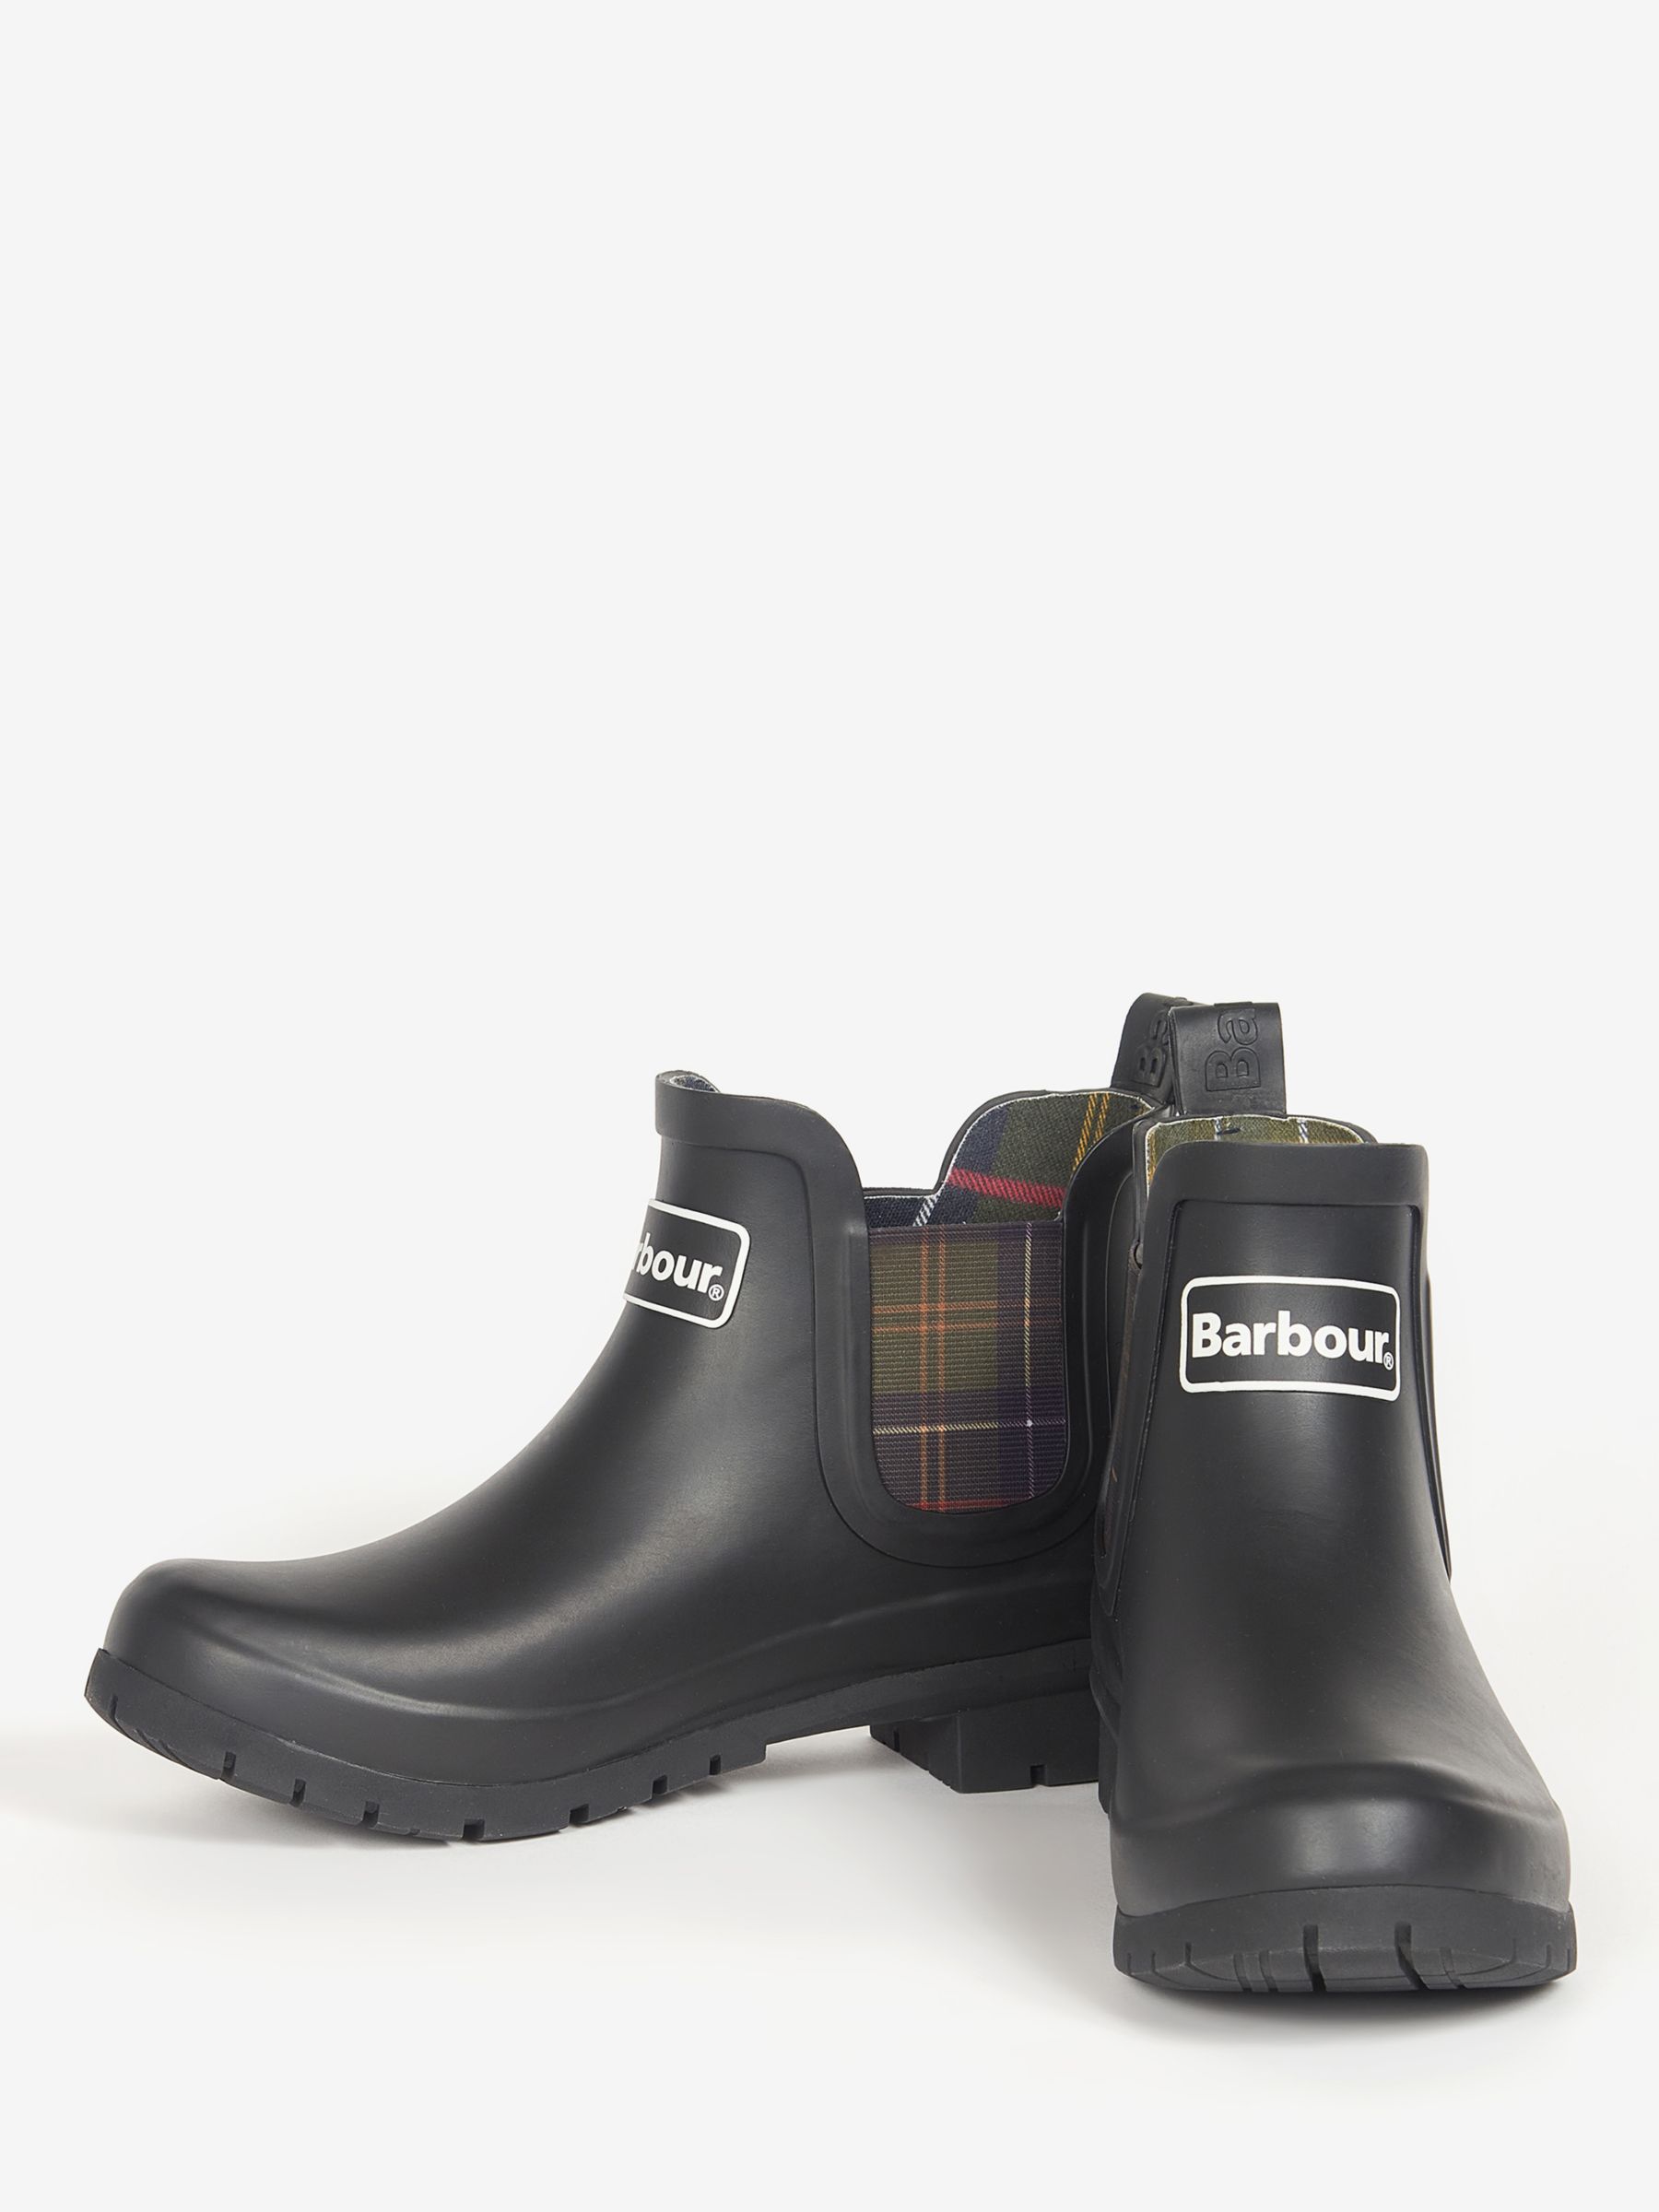 Barbour Kingham Wellington Boots, Black at John Lewis & Partners